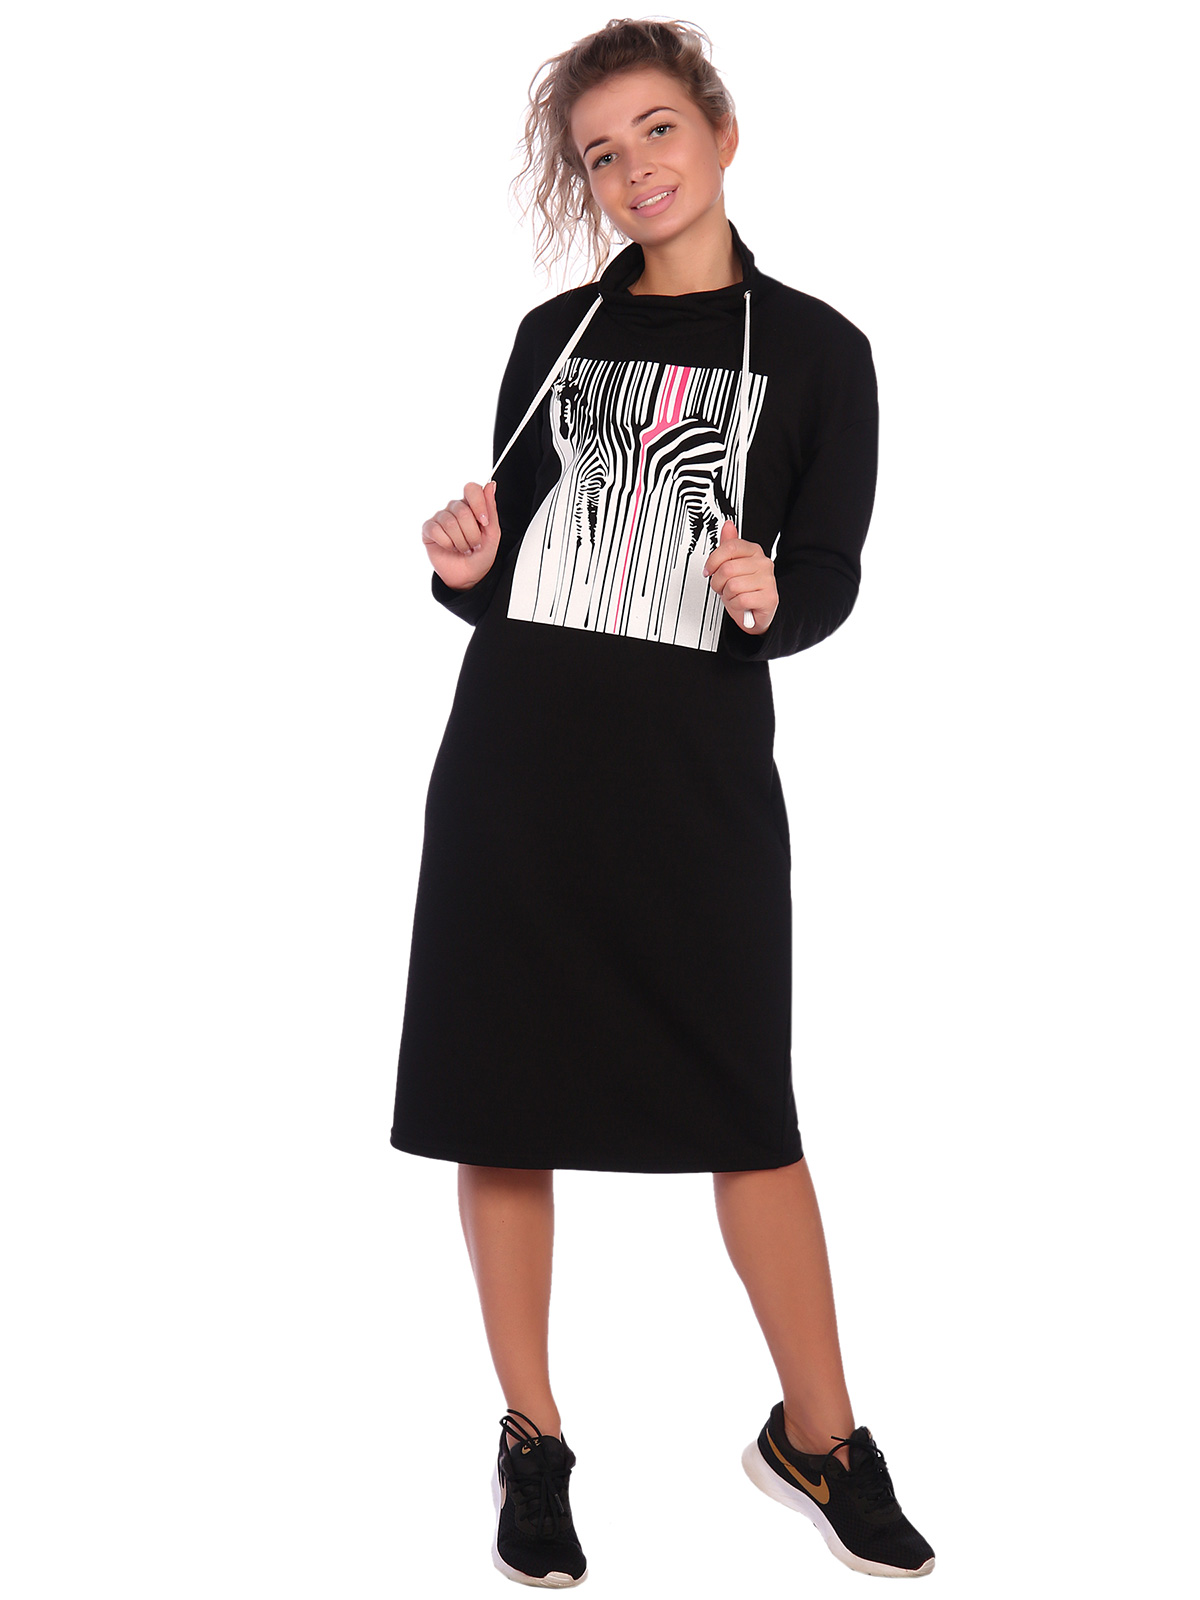 Жен. платье арт. 16-0620 Черный р. 44 НСД Трикотаж, размер 44 - фото 2